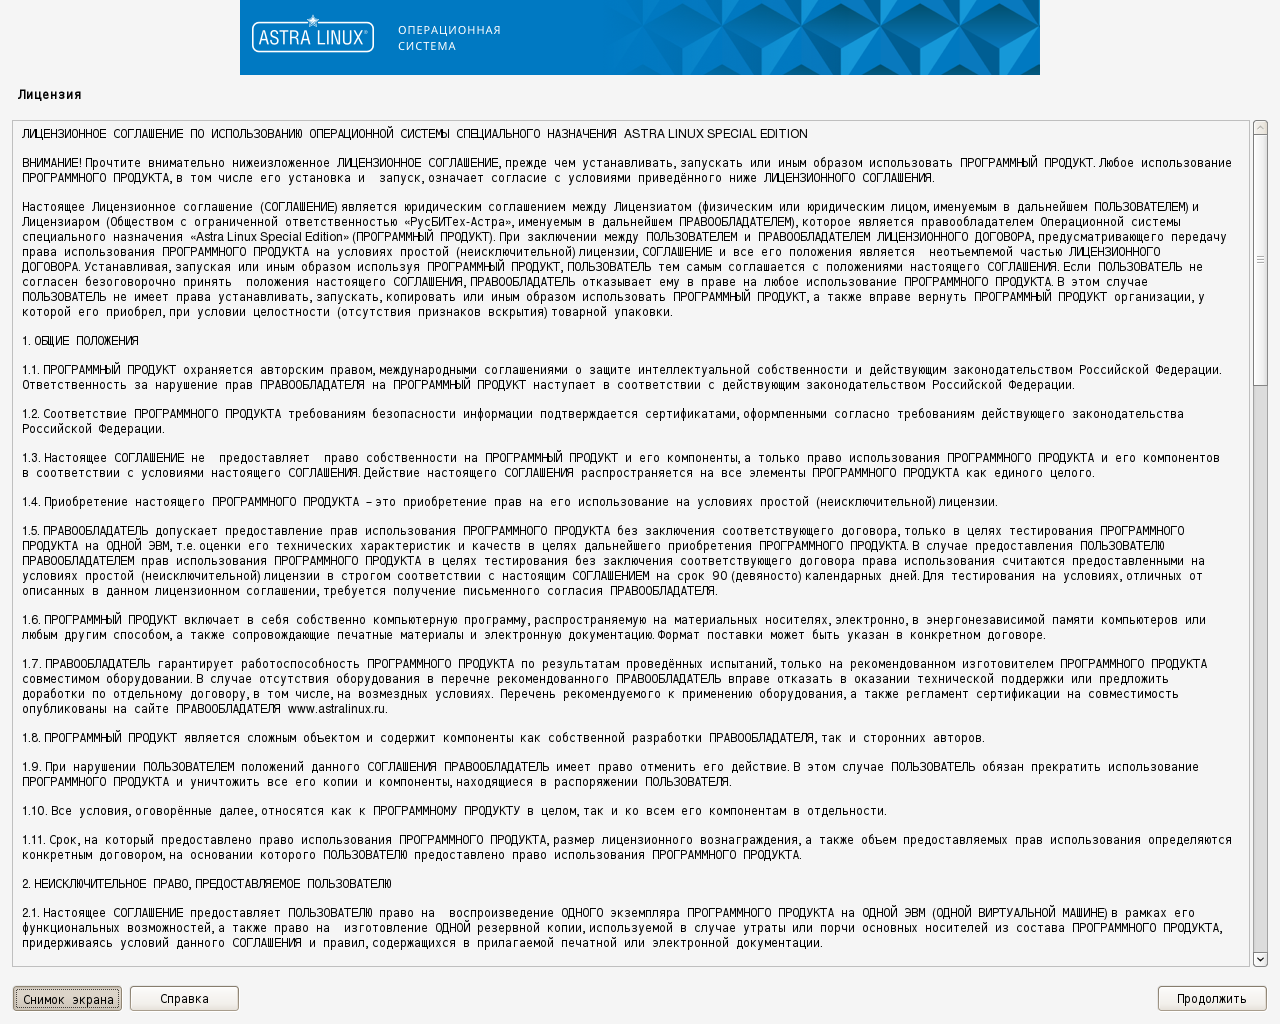 Скриншот лицензионного соглашения по использованию ОС Astra Linux Special Edition